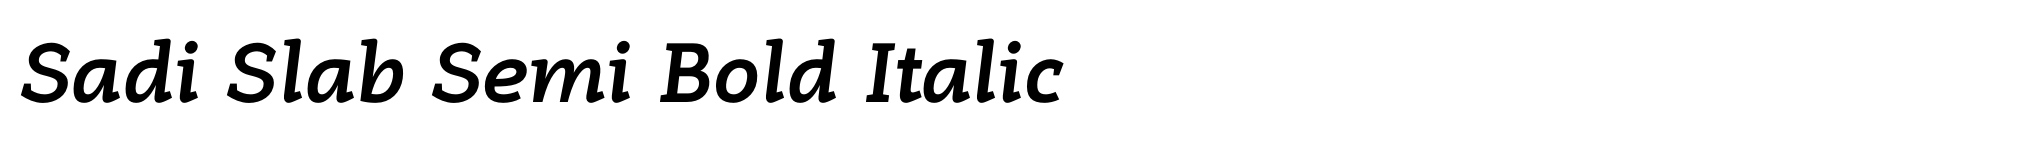 Sadi Slab Semi Bold Italic image